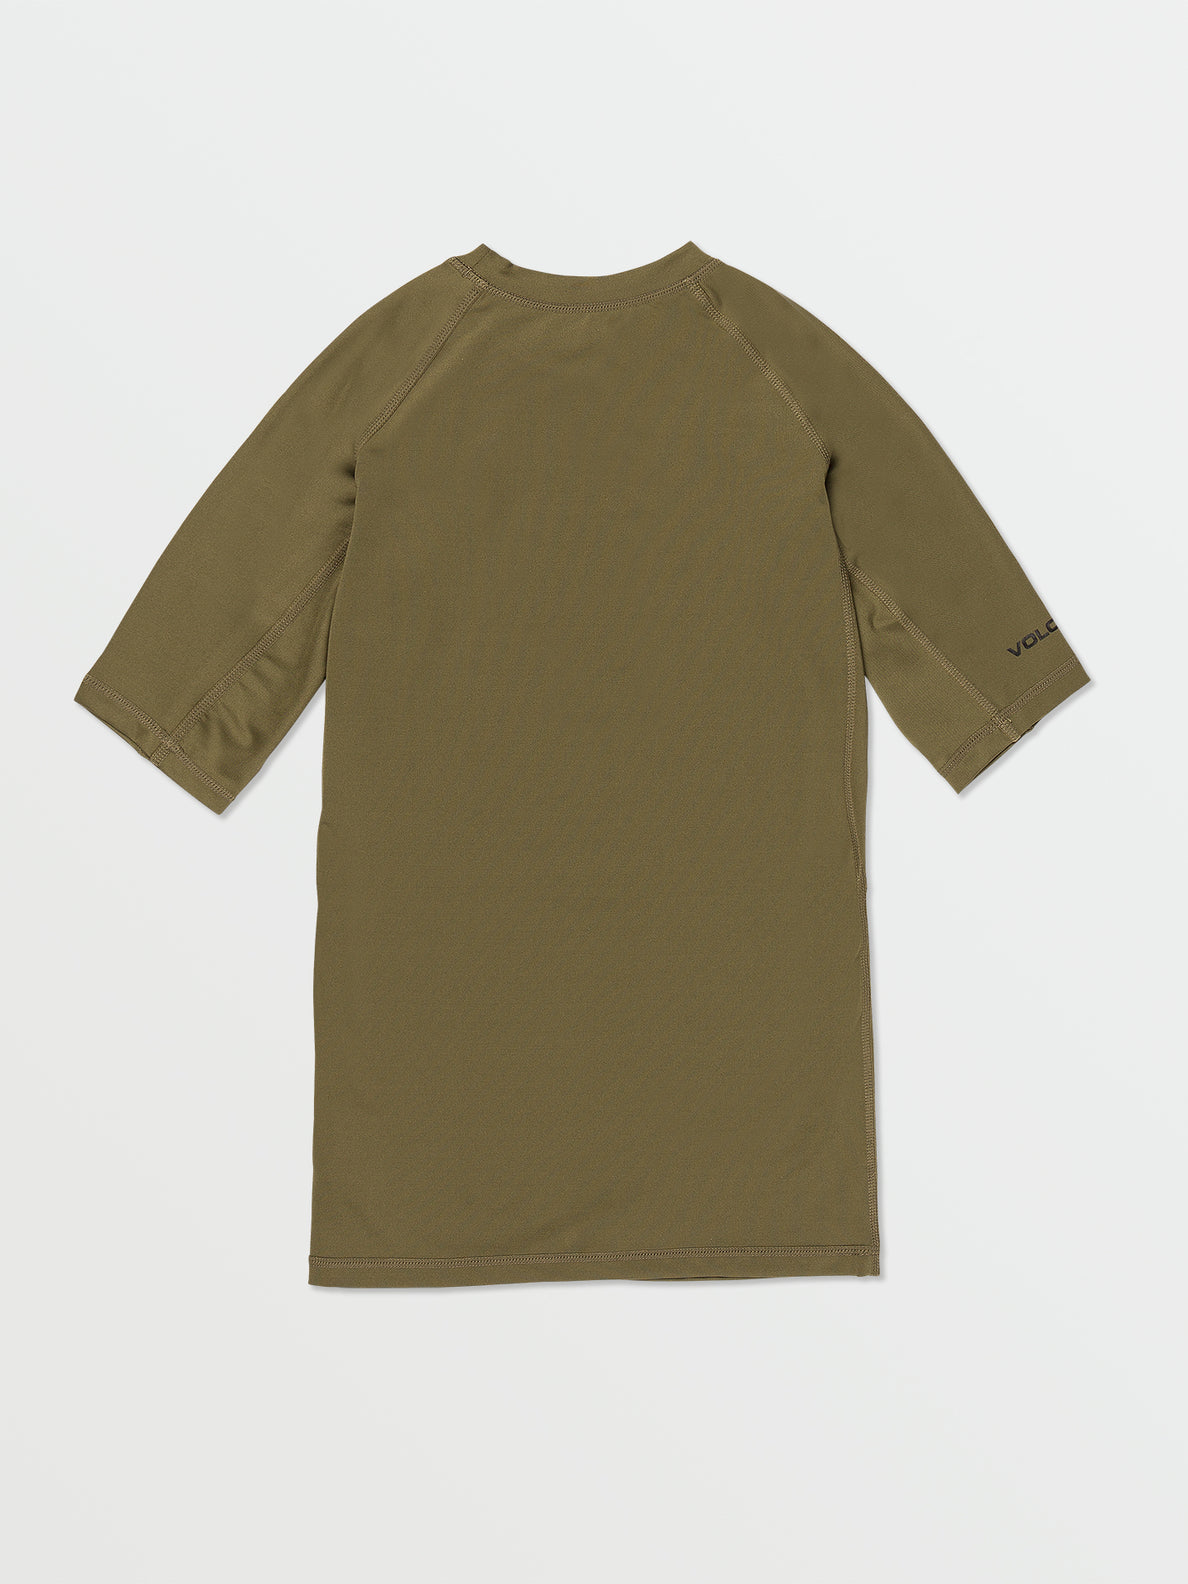 Lido Solid Short Sleeve UPF 50 Rashguard - Military (A9112302_MIL) [B]